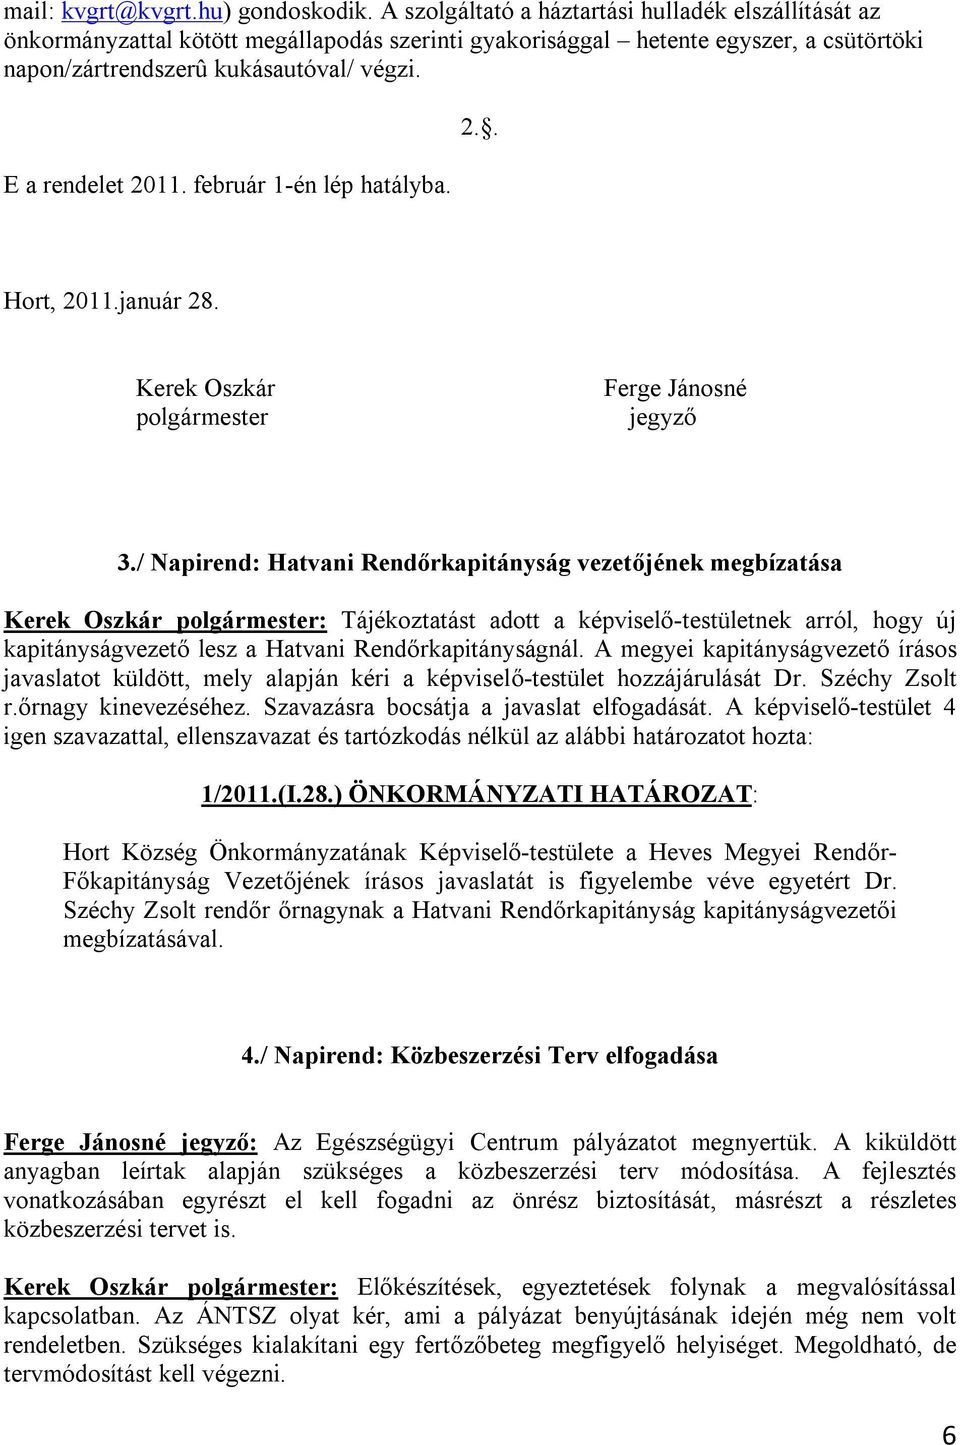 E a rendelet 2011. február 1-én lép hatályba. 2.. Hort, 2011.január 28. Kerek Oszkár polgármester Ferge Jánosné jegyző 3.